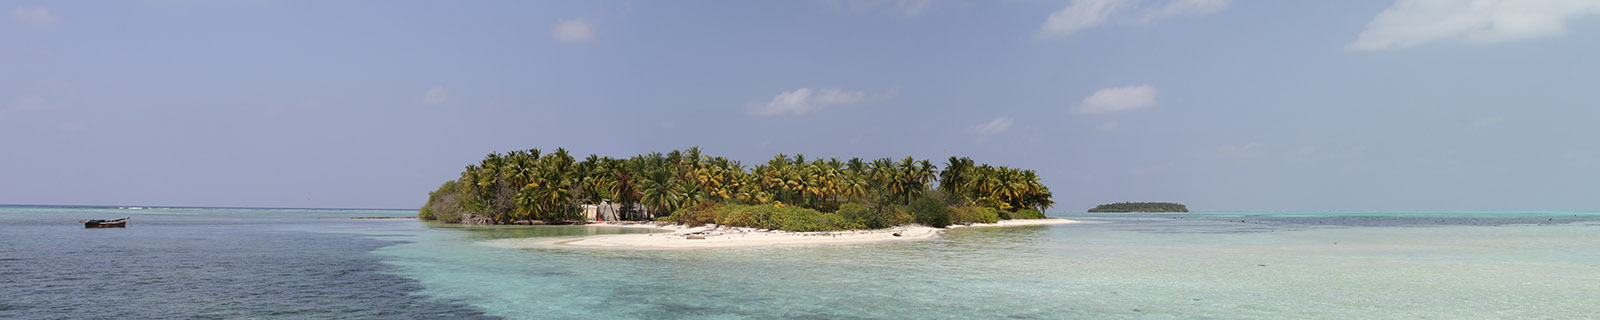 Hathifushi Island panorama